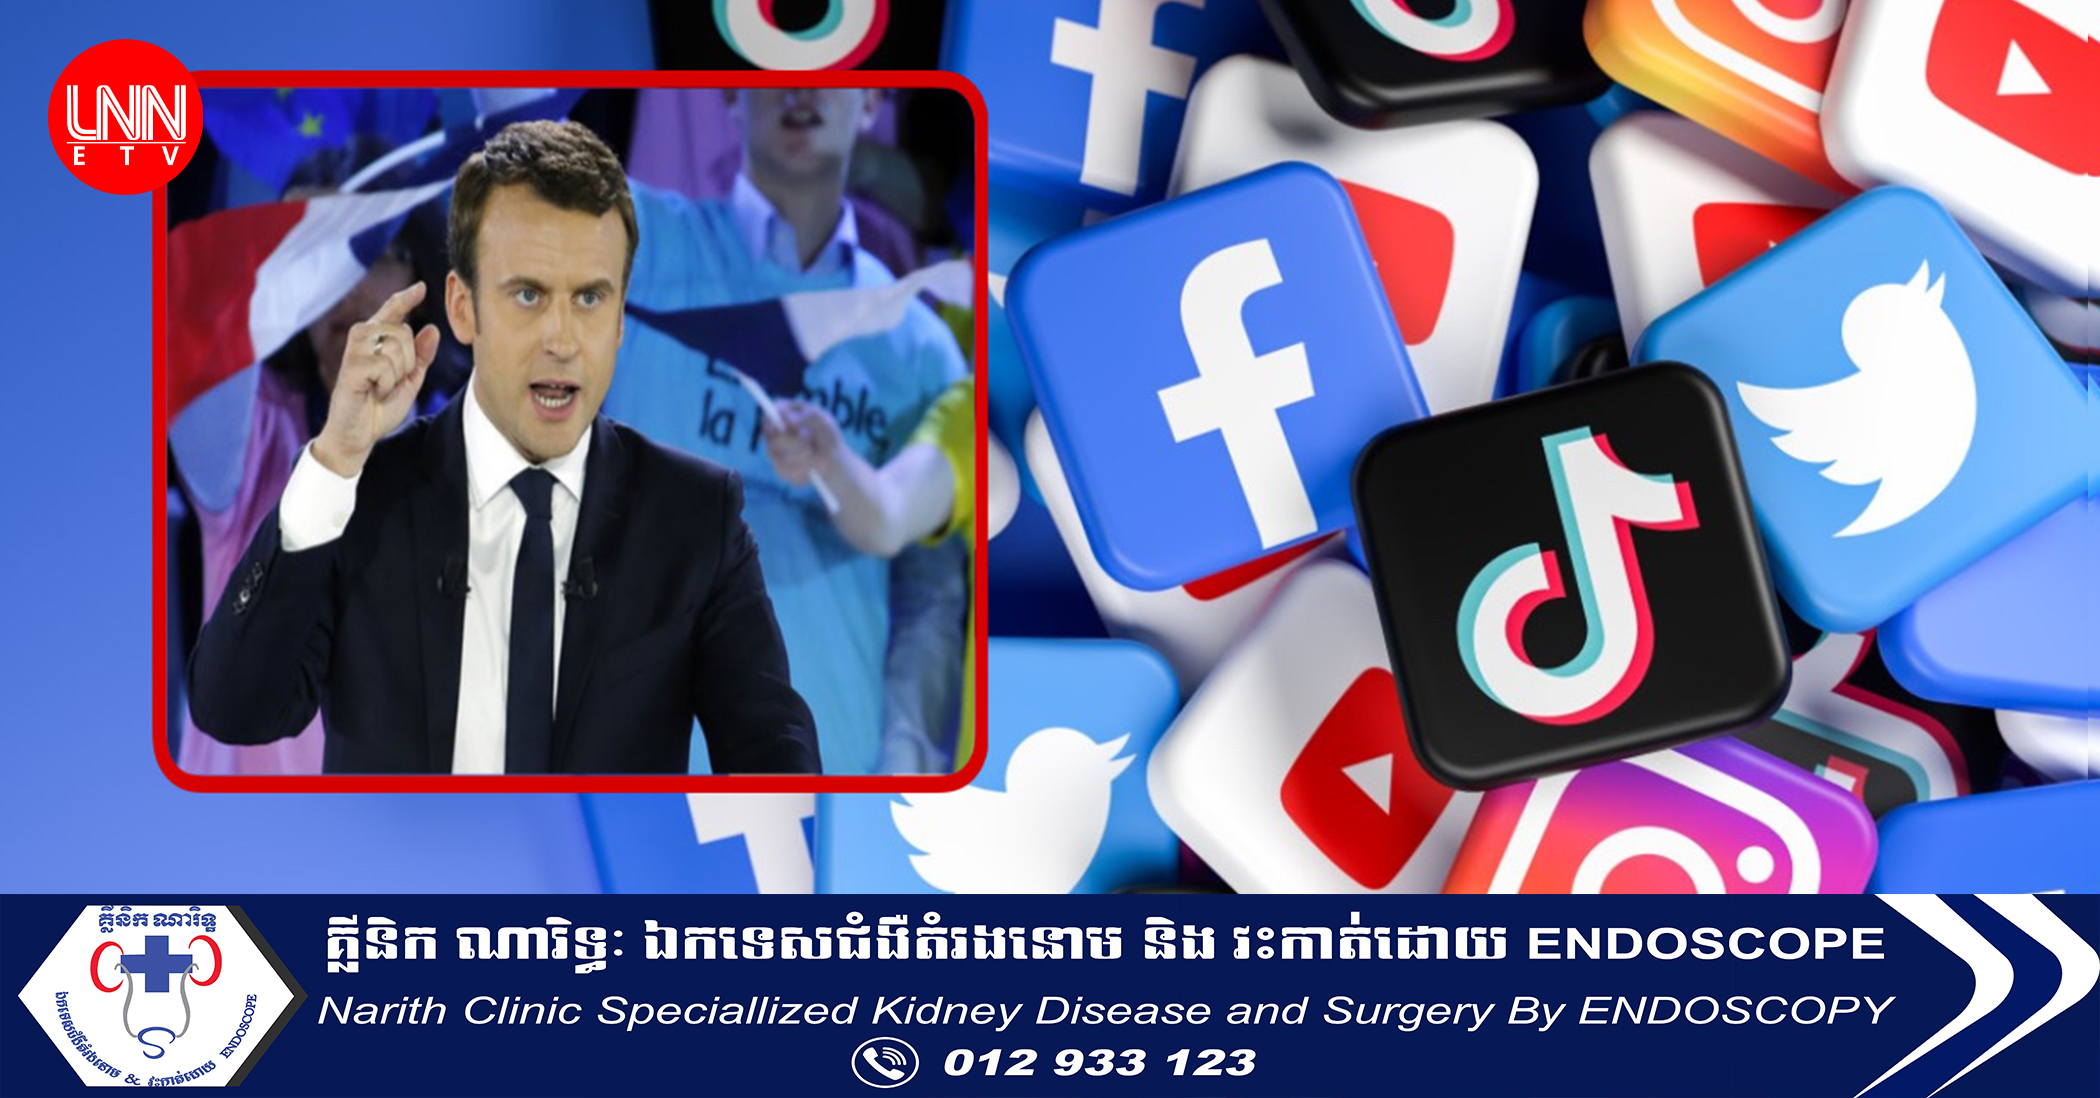 លោក Macron អាចនឹងបញ្ជាឲ្យបិទ TikTok, Snapchat និង Twitter បើកុបកម្មនៅ បារាំង កាន់តែអាក្រក់ទៅៗ